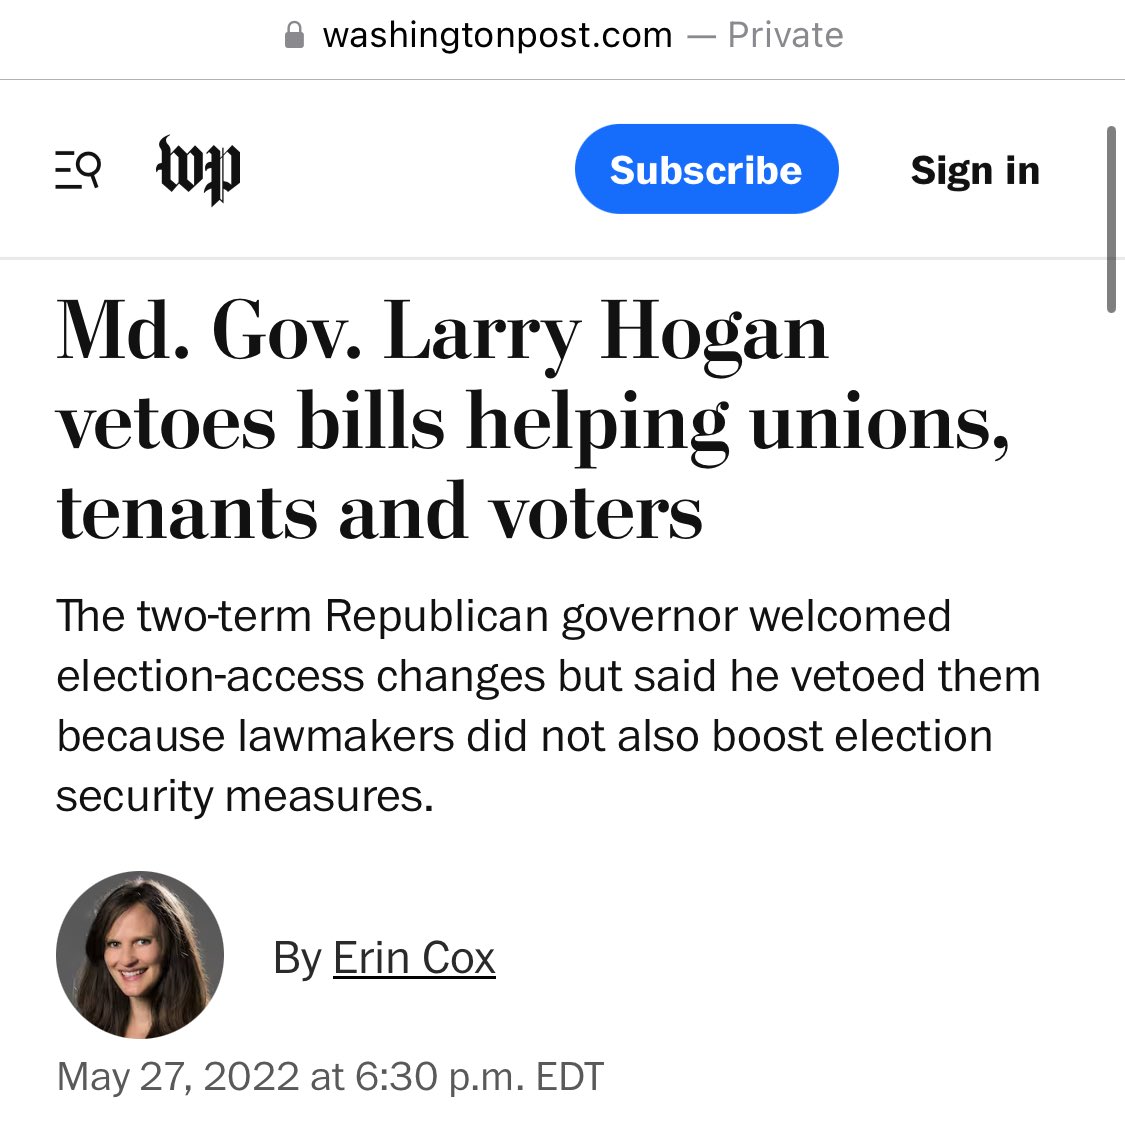 Larry Hogan vetoed bills helping unions. 
#MDPolitics #MDSen #AllinforAlsobrooks